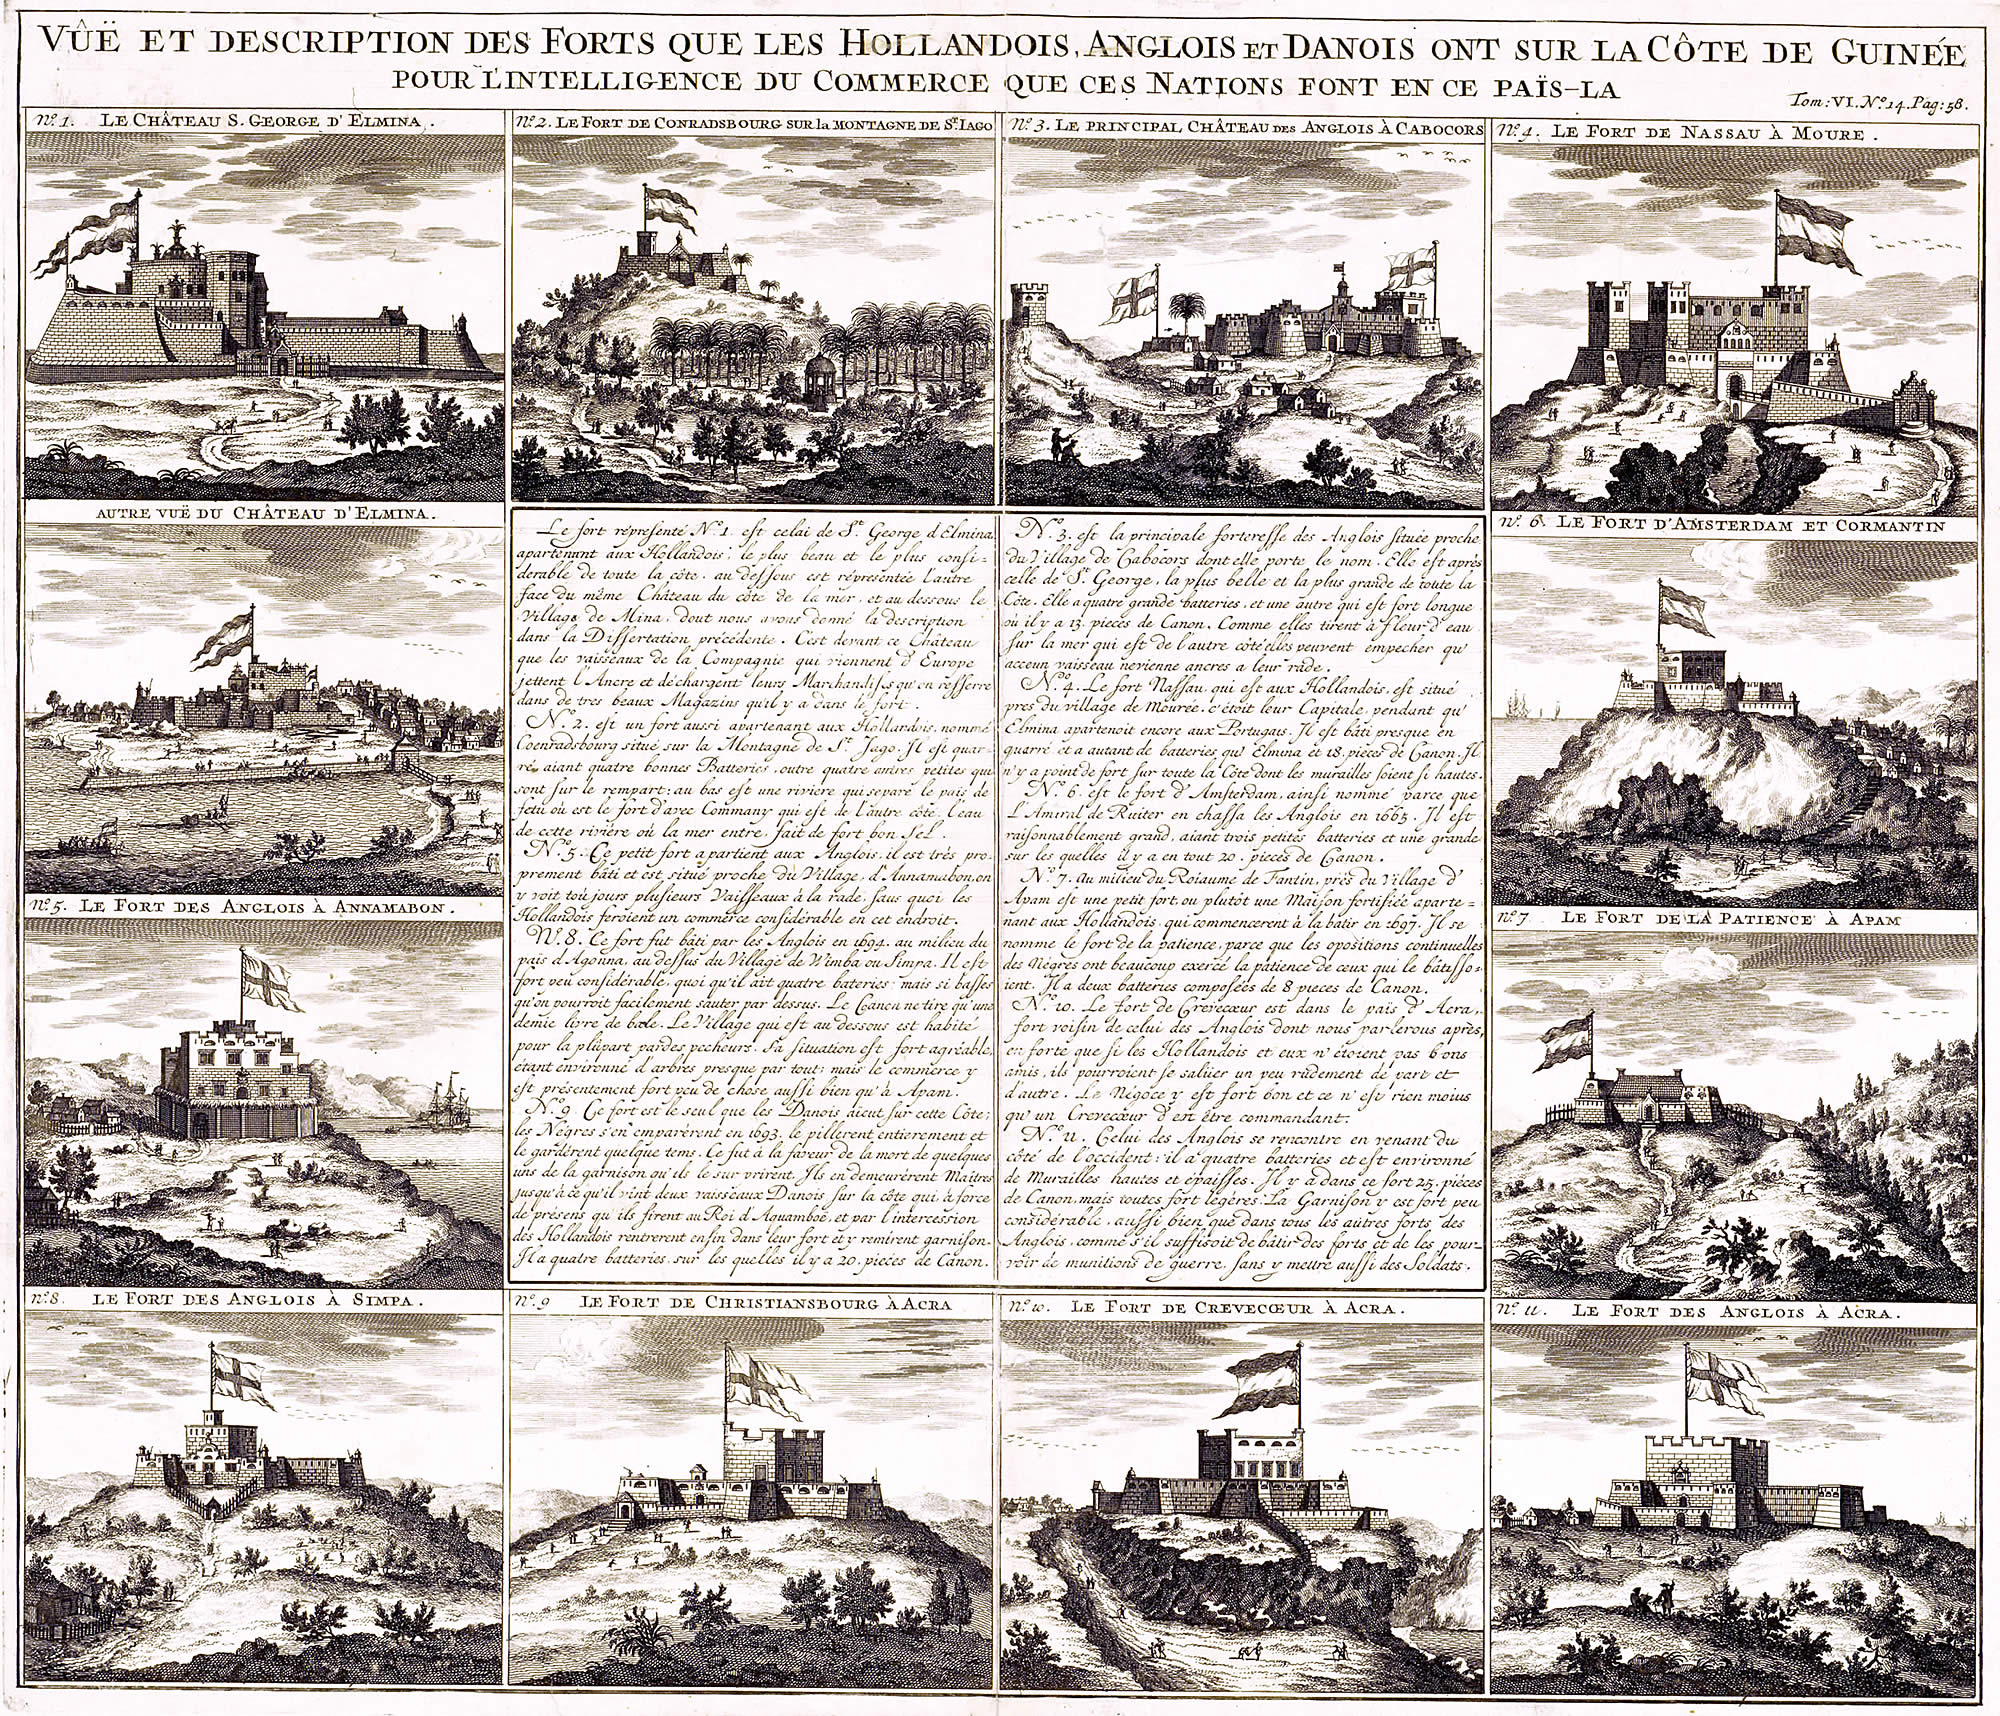 Vues et description des forts que les Hollandais, Anglais et Danois ont sur la côte de Guinée [...]